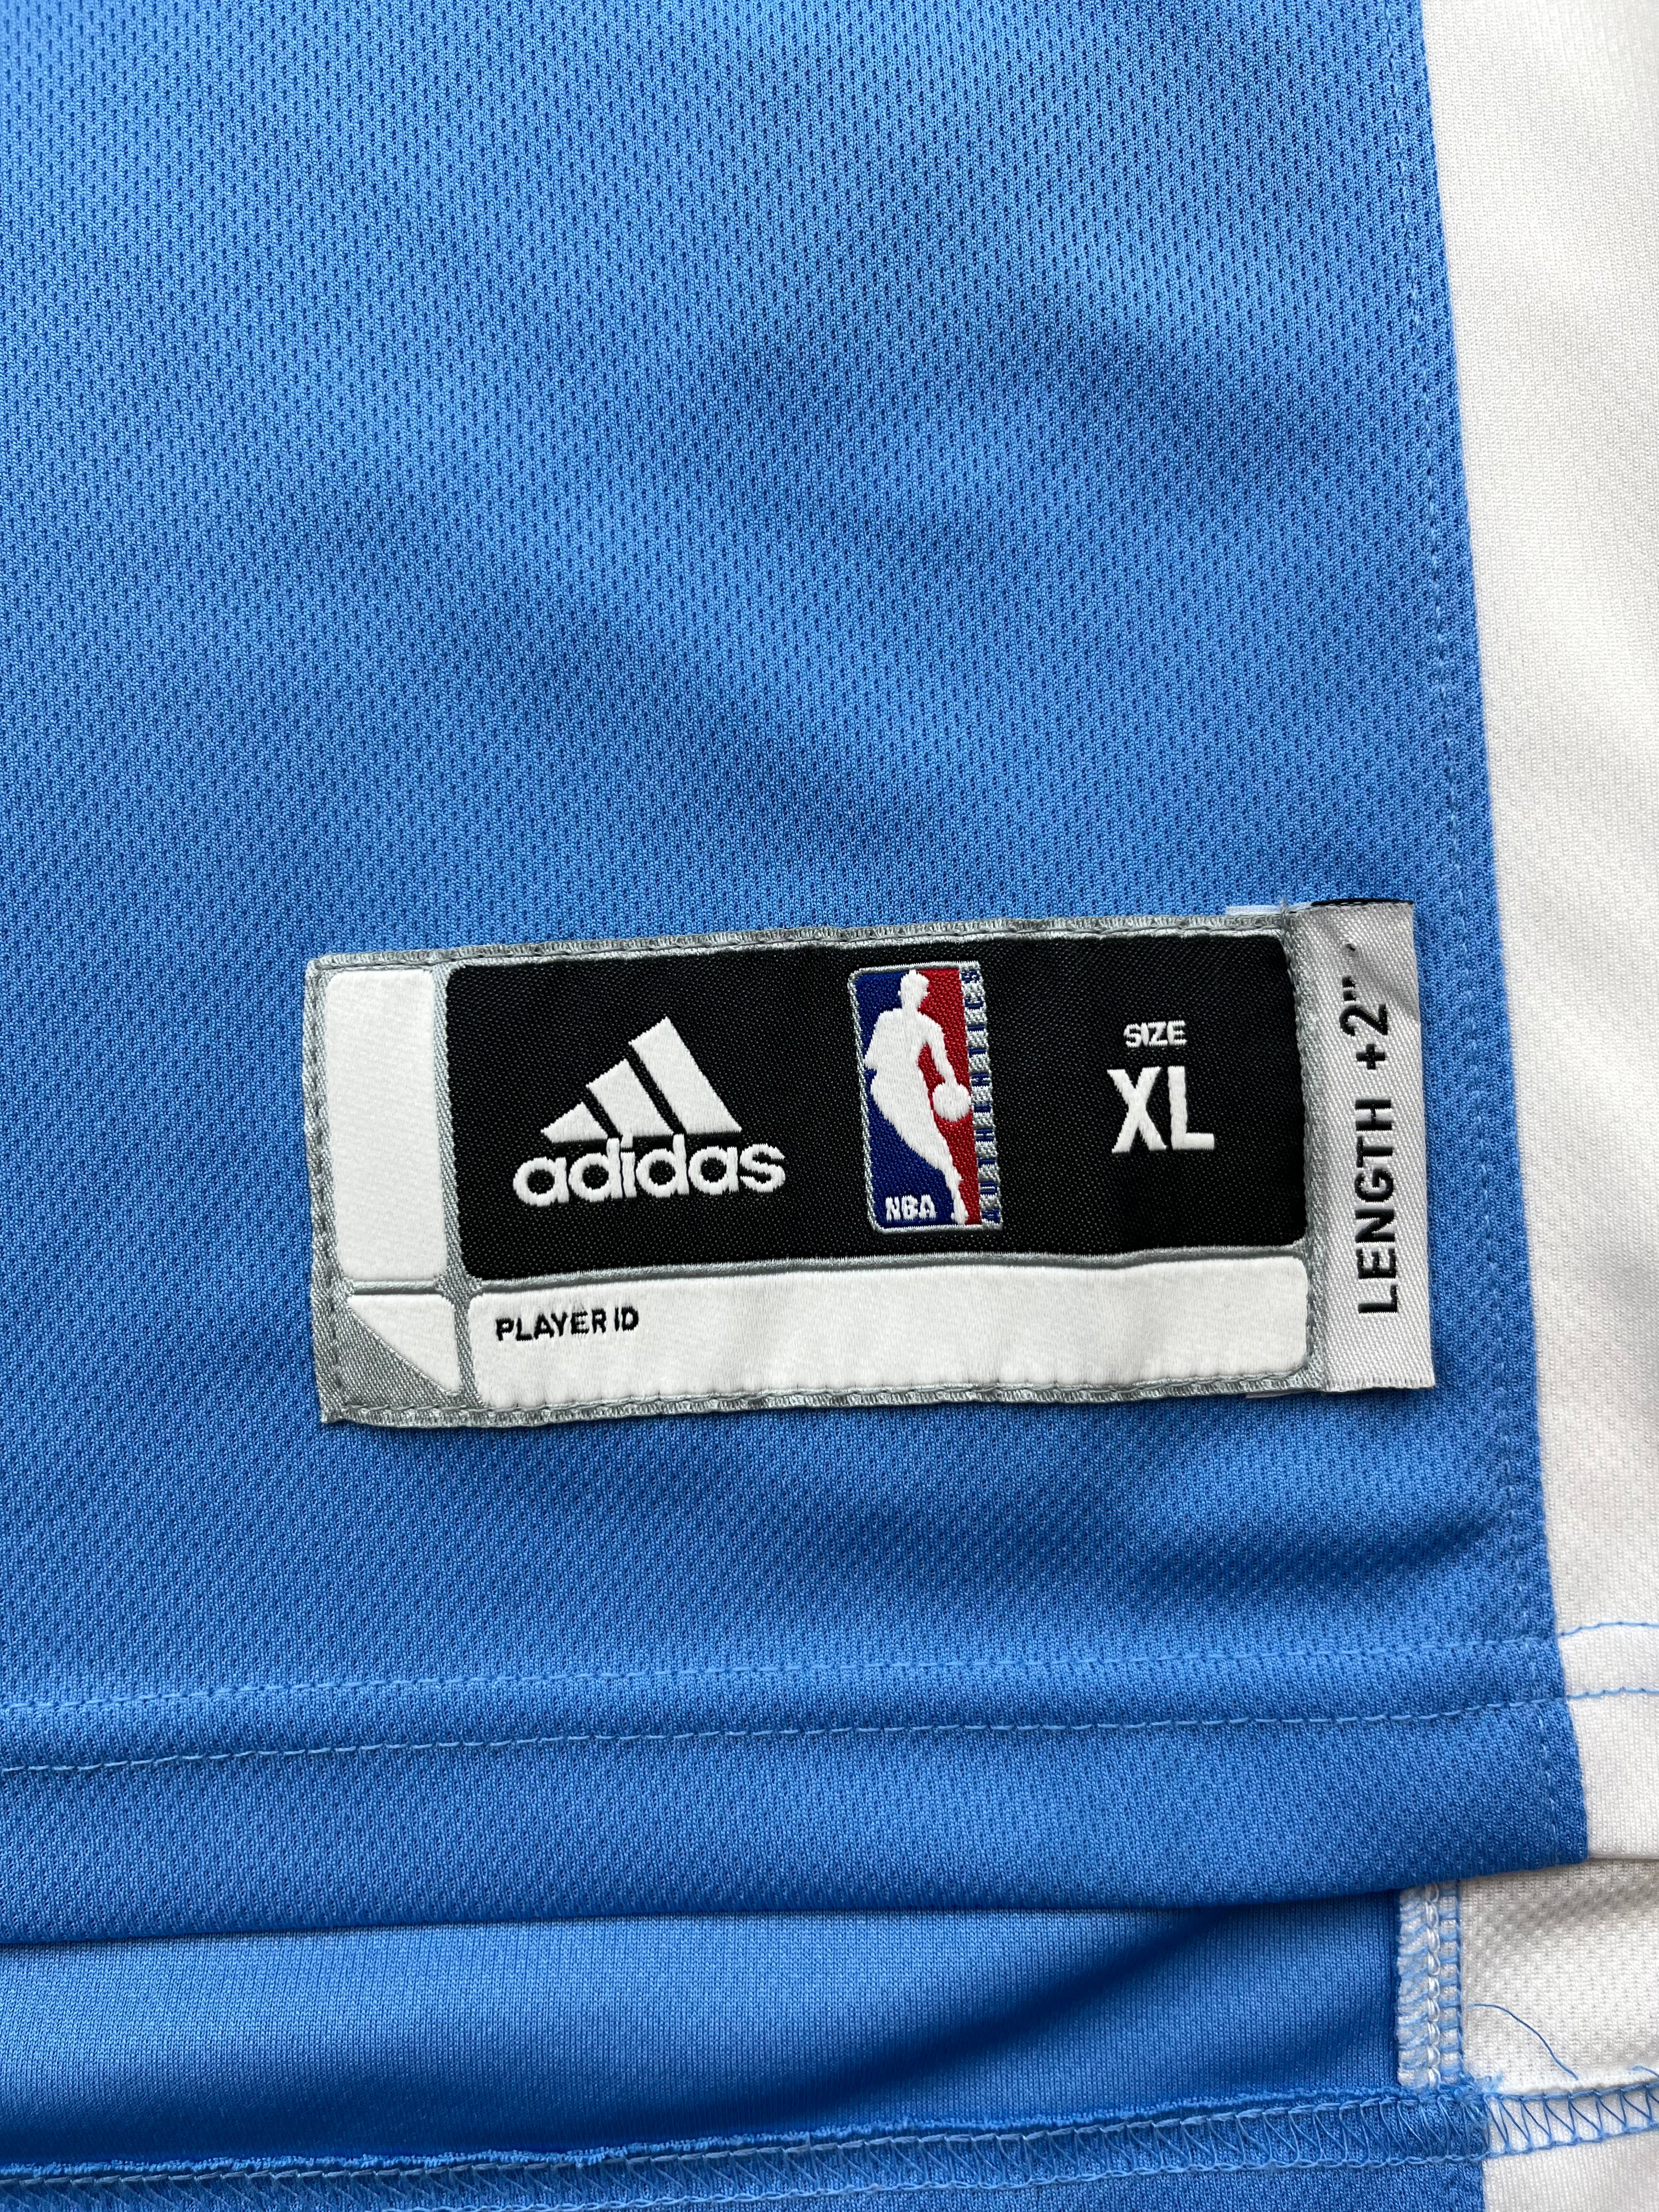 2011-14 Denver Nuggets Adidas Road Jersey Gallinari # 8 (XL) 9/10